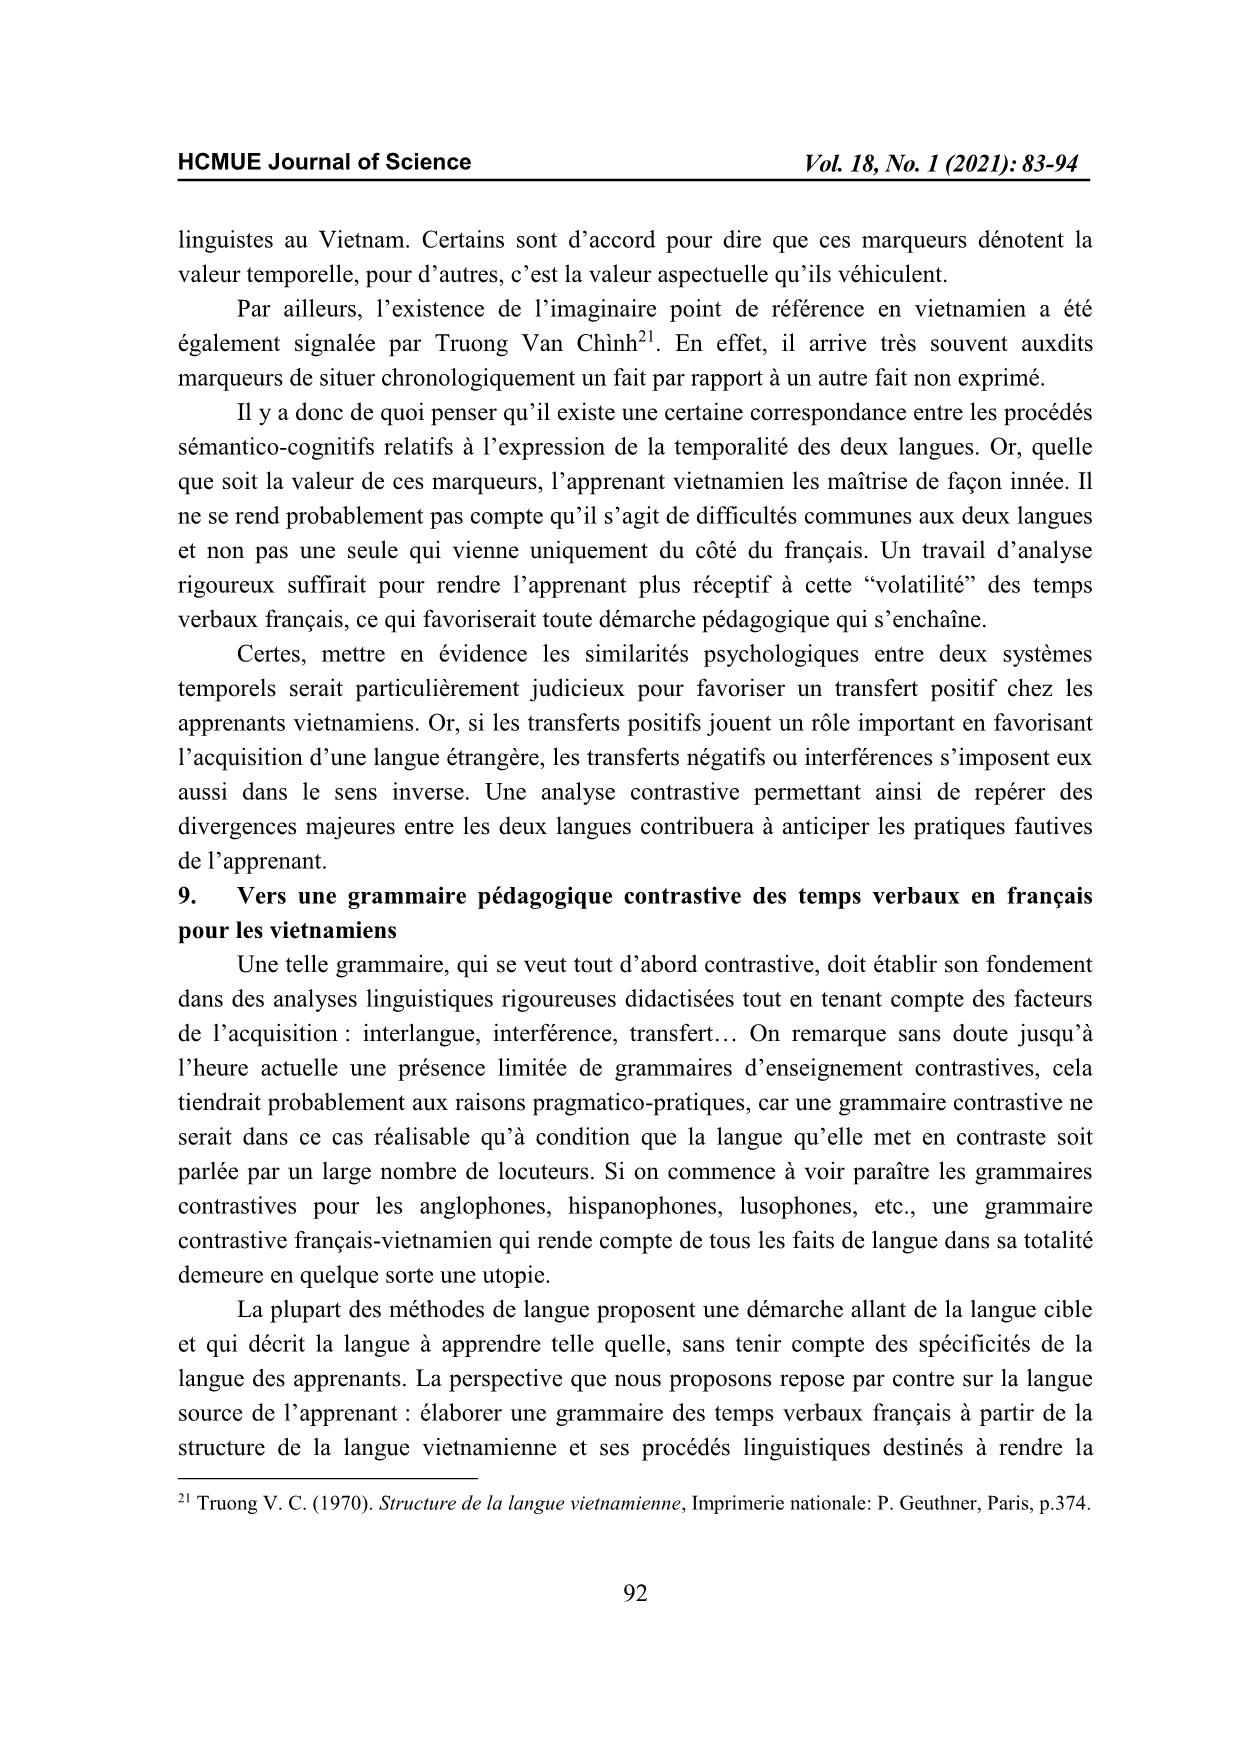 Vers une grammaire contrastive des temps verbaux pour les apprenants Vietnamiens du Français Langue Étrangère (FLE) trang 10